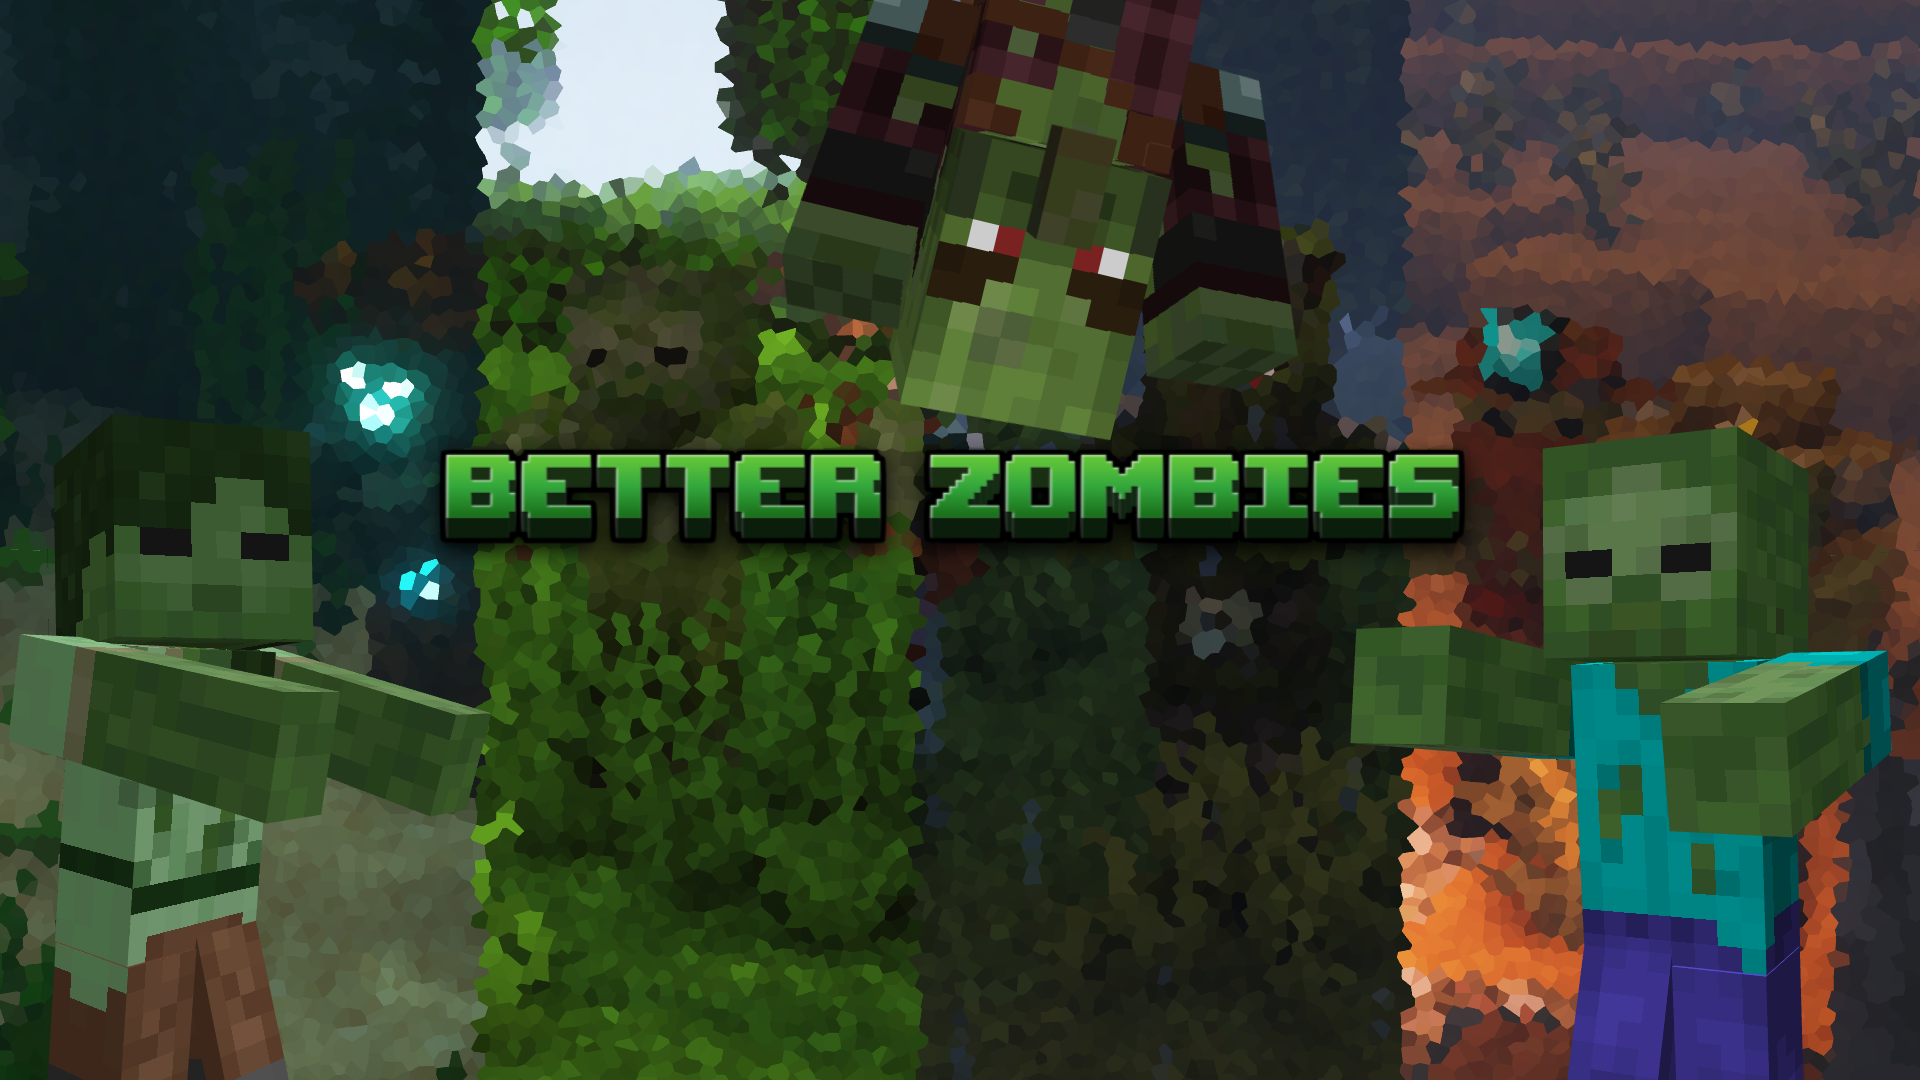 Better Zombies screenshot 1